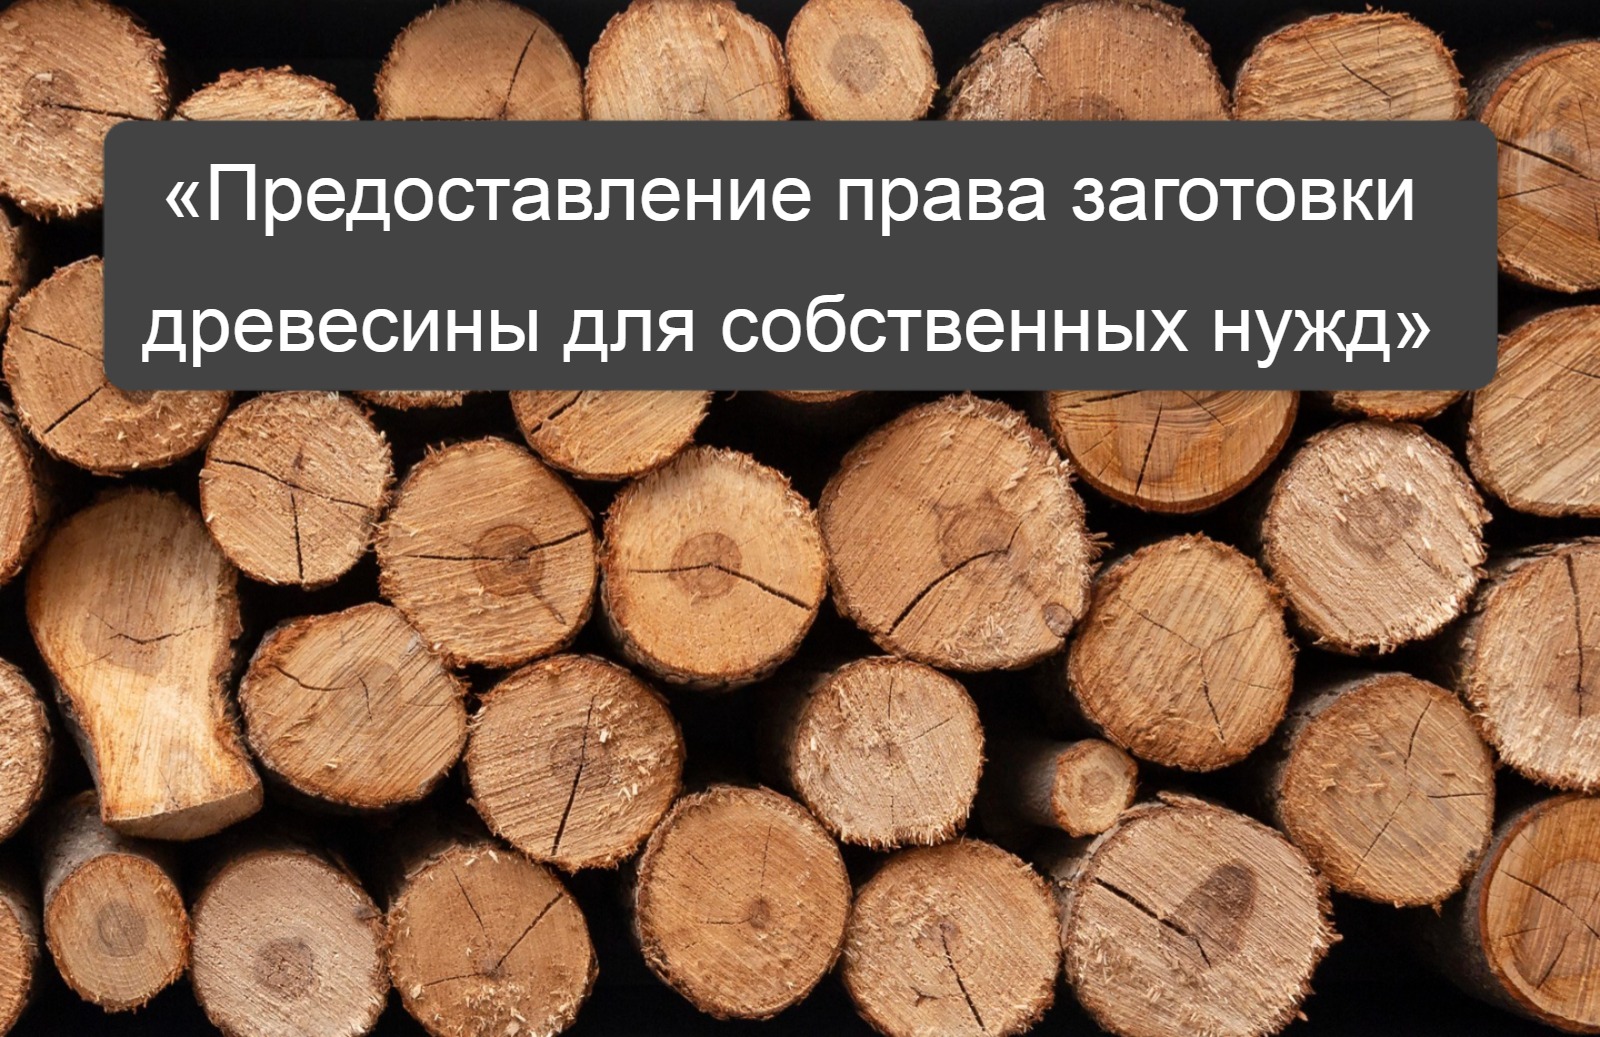 Муниципальную услугу «Предоставление права заготовки древесины для собственных нужд» можно получить на Едином портале госуслуг